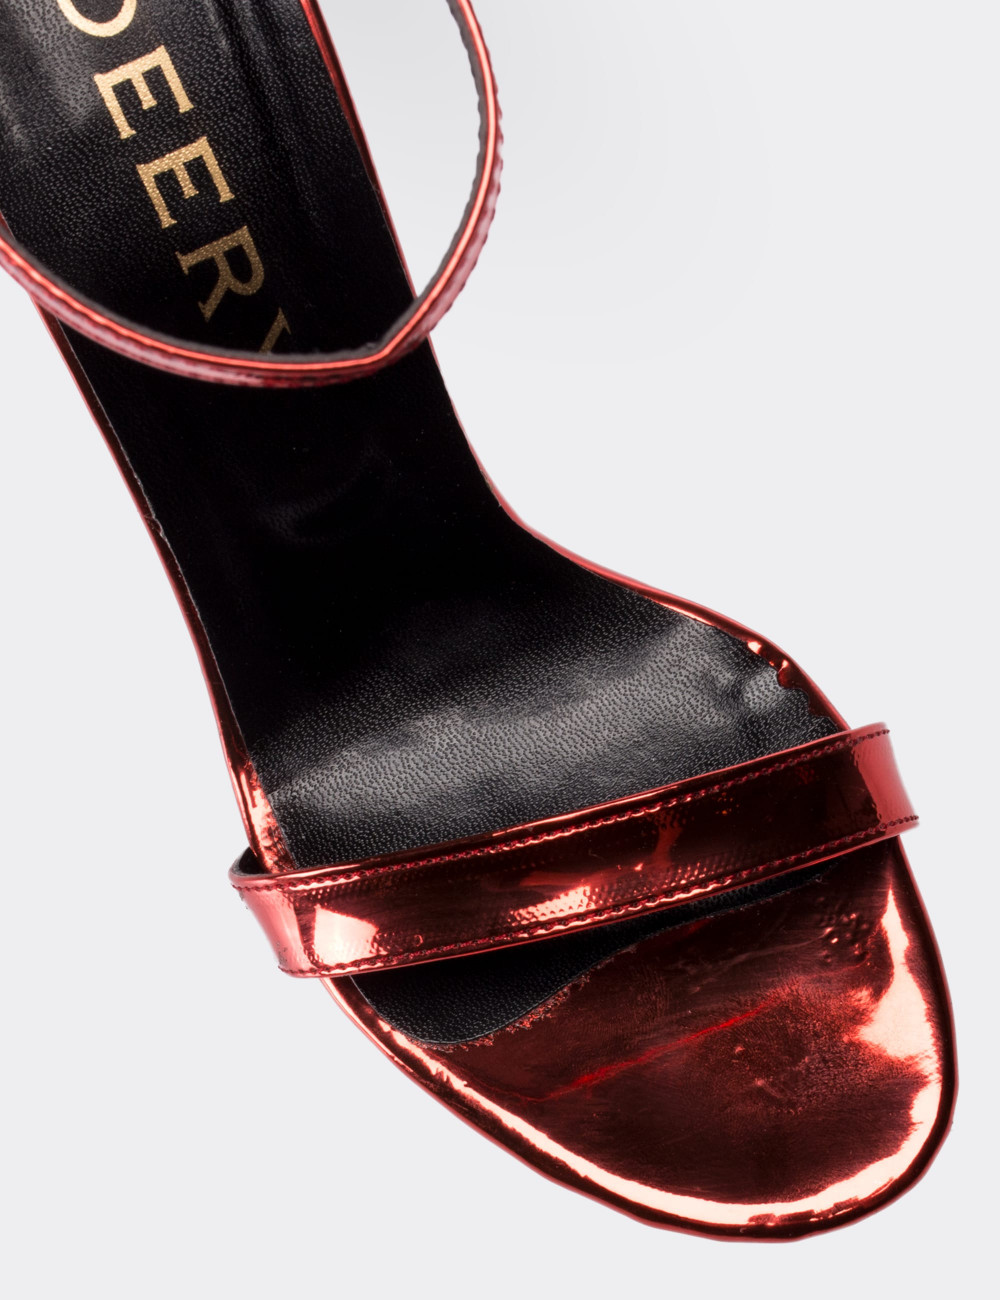 Kırmızı Topuklu Kadın Abiye Ayakkabı - 00733ZKRMM02